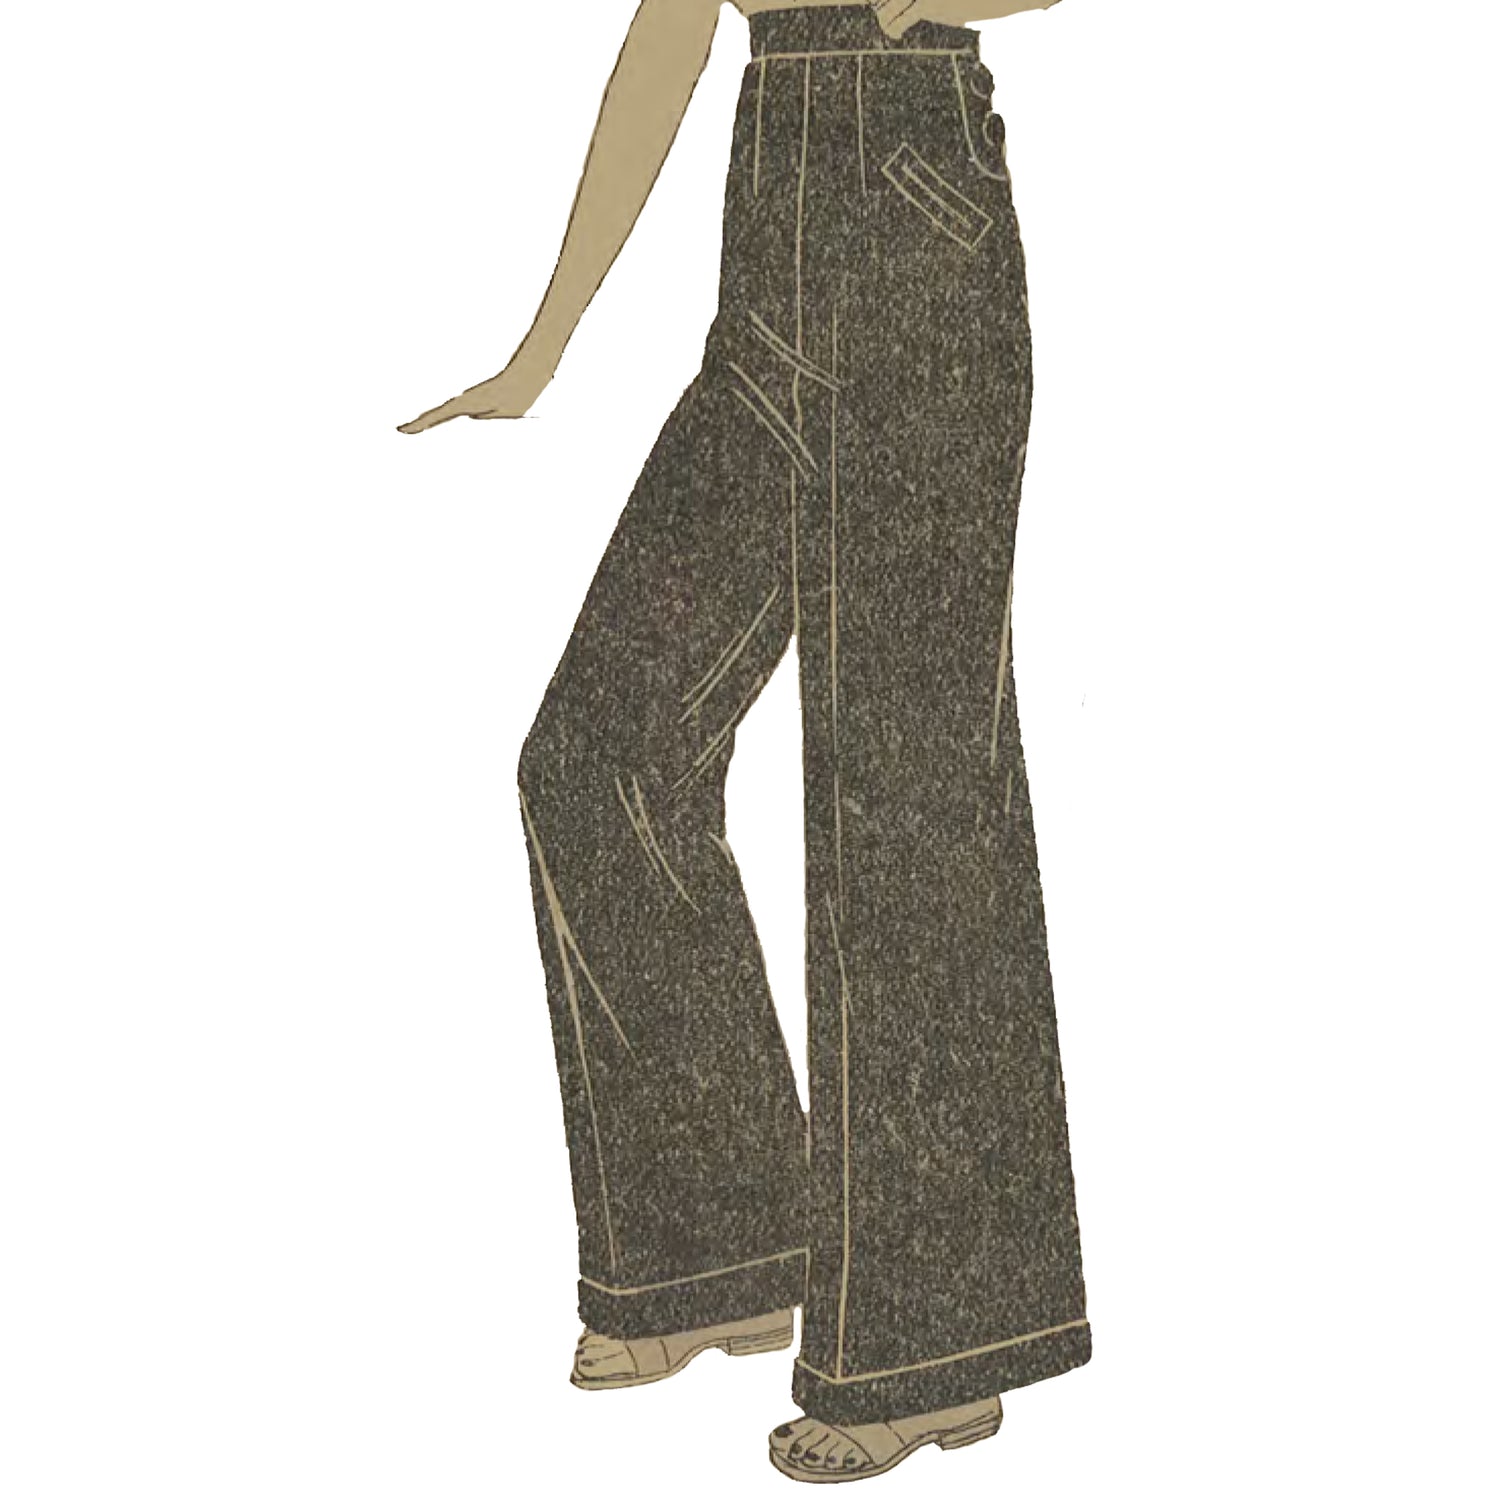 1930's Vintage Sewing Pattern: Women's Wide Leg Slacks, Trousers